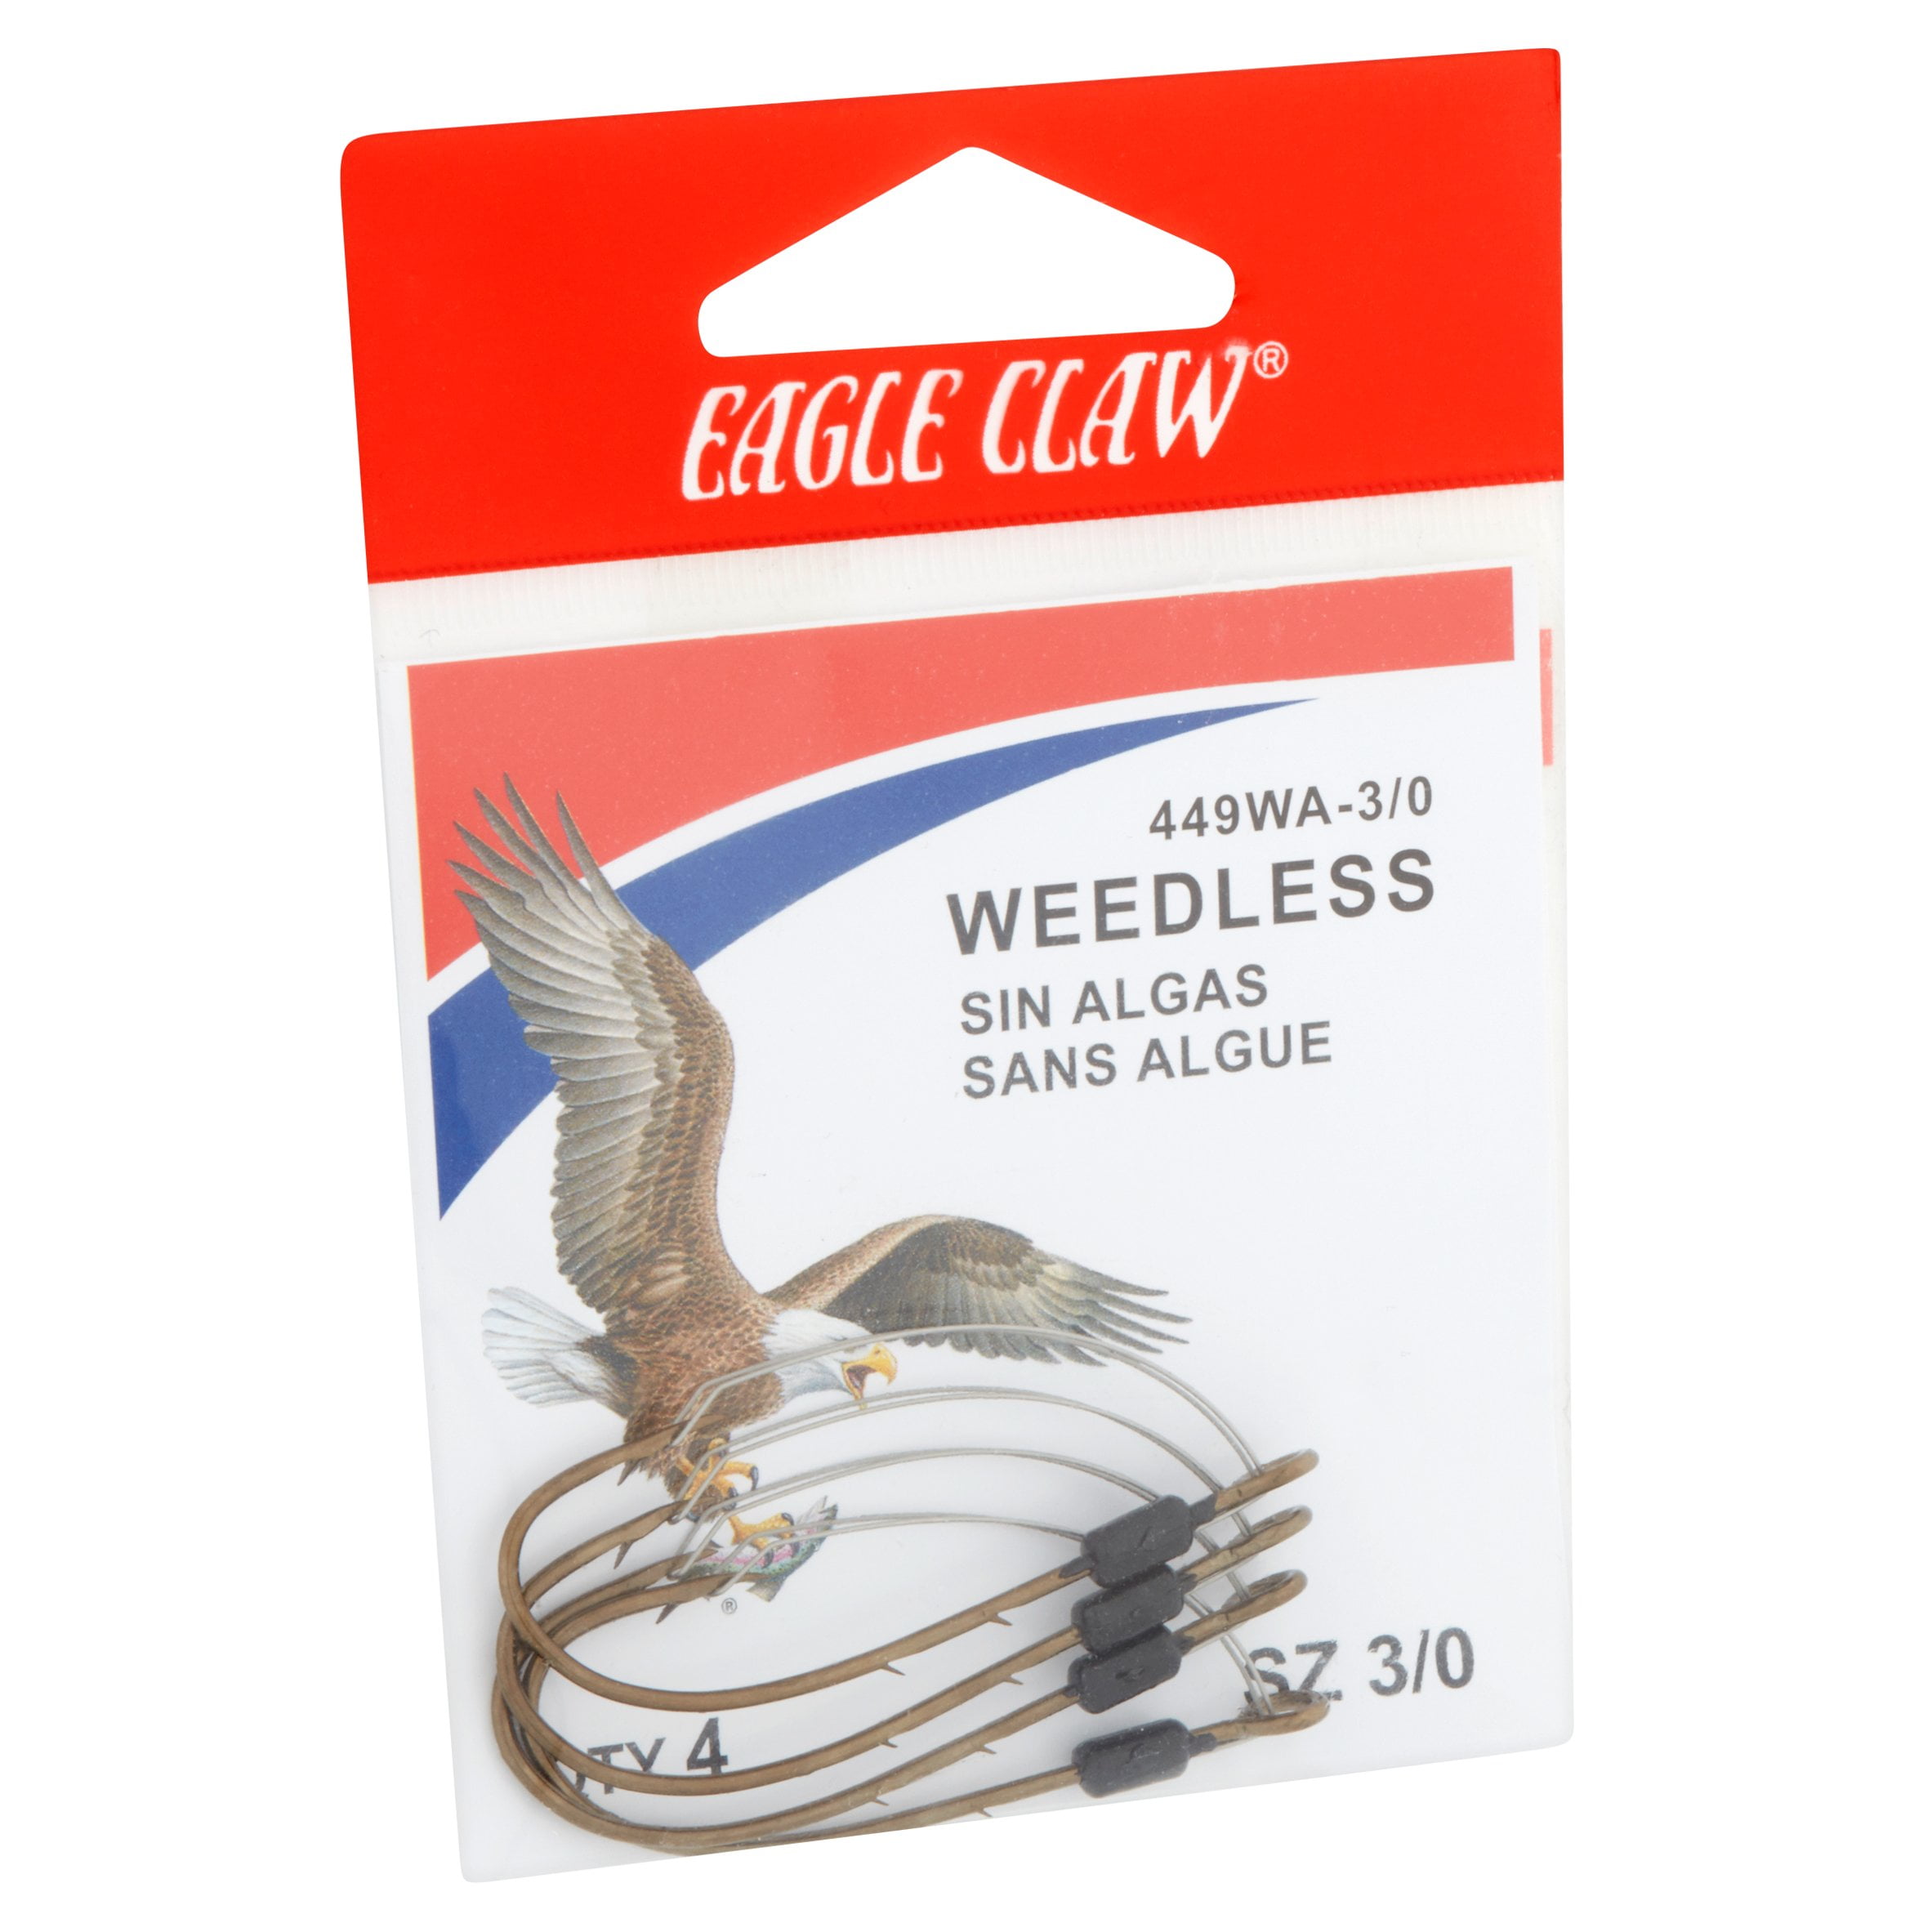 Eagle Claw 449WAH-3/0 Weedless Baitholder Fishing Hook Size 3/0